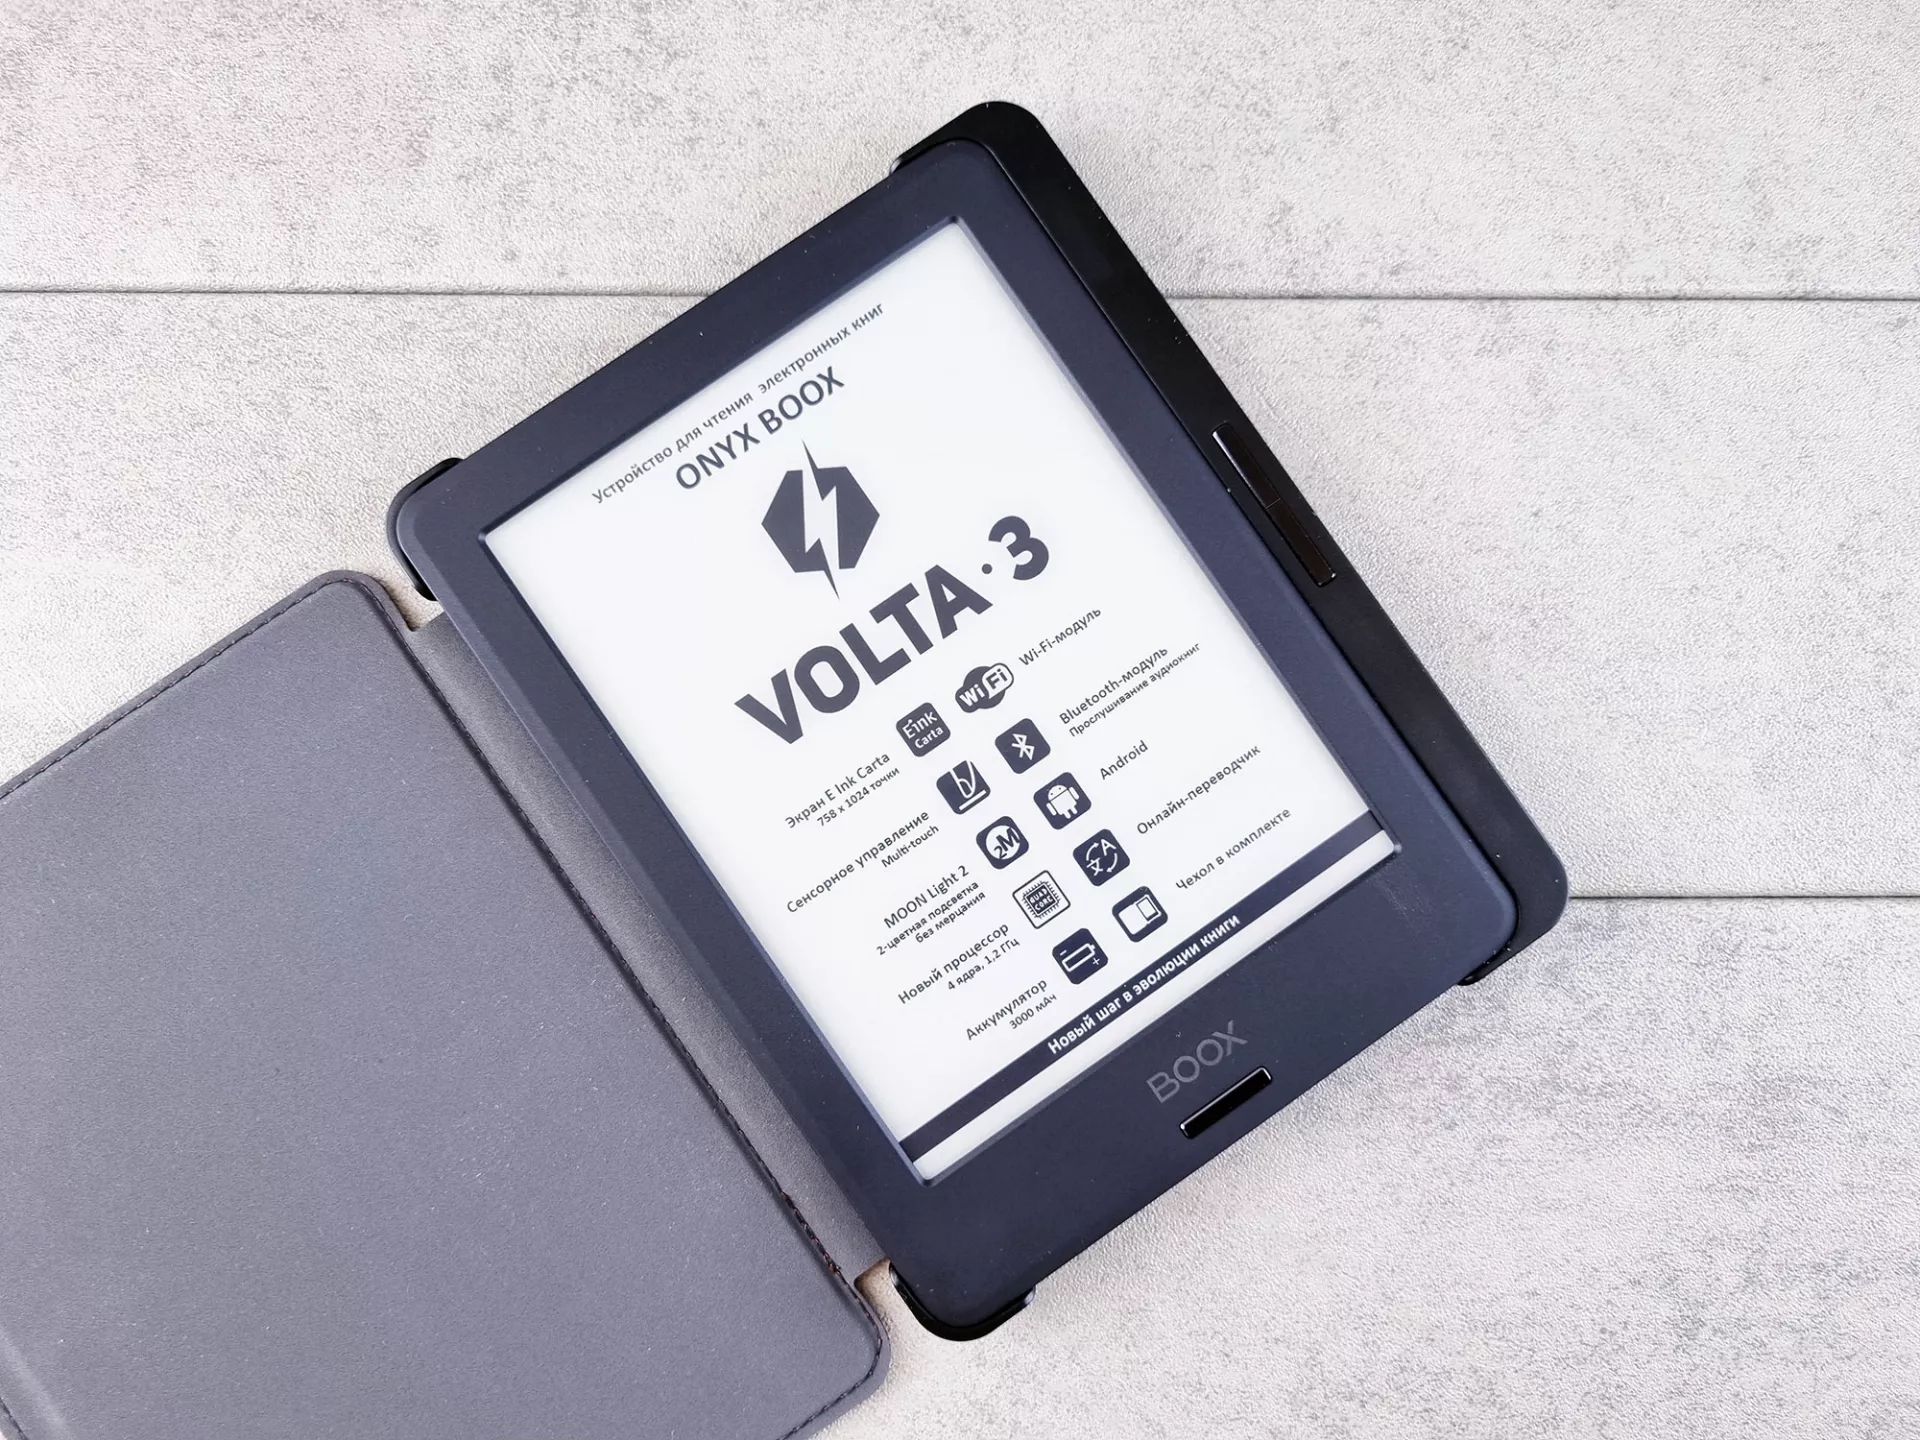 Тест-драйв электронной книги ONYX BOOX Volta 3